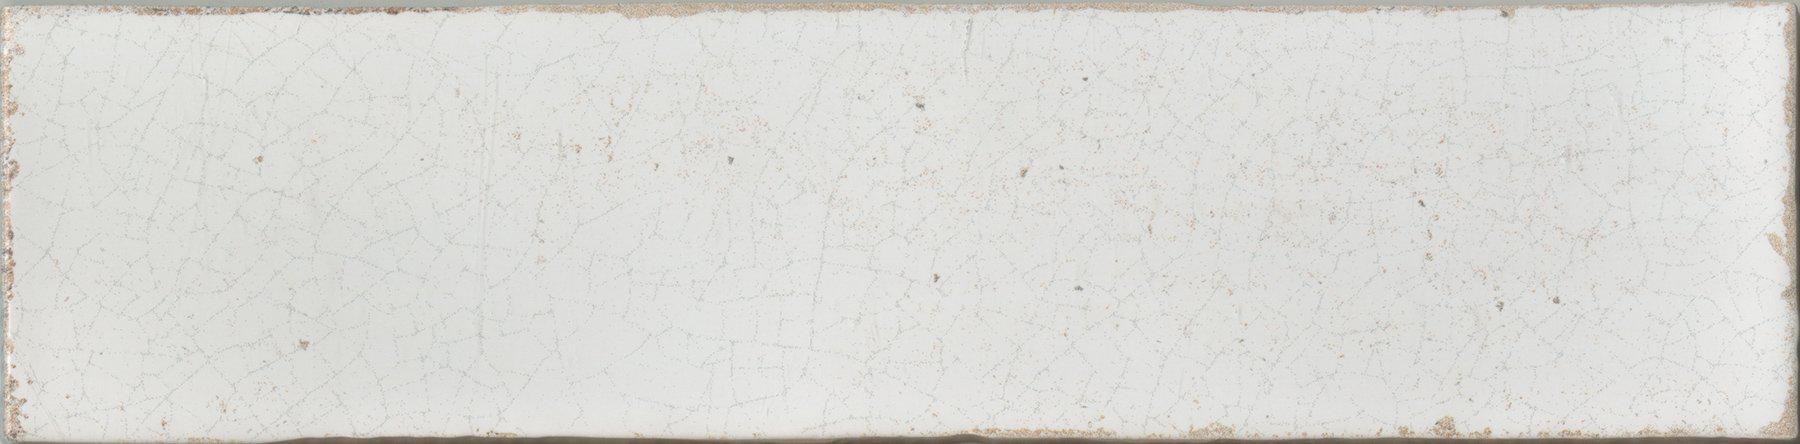 Maiolica White Crackled 3x12 Ceramic  Tile